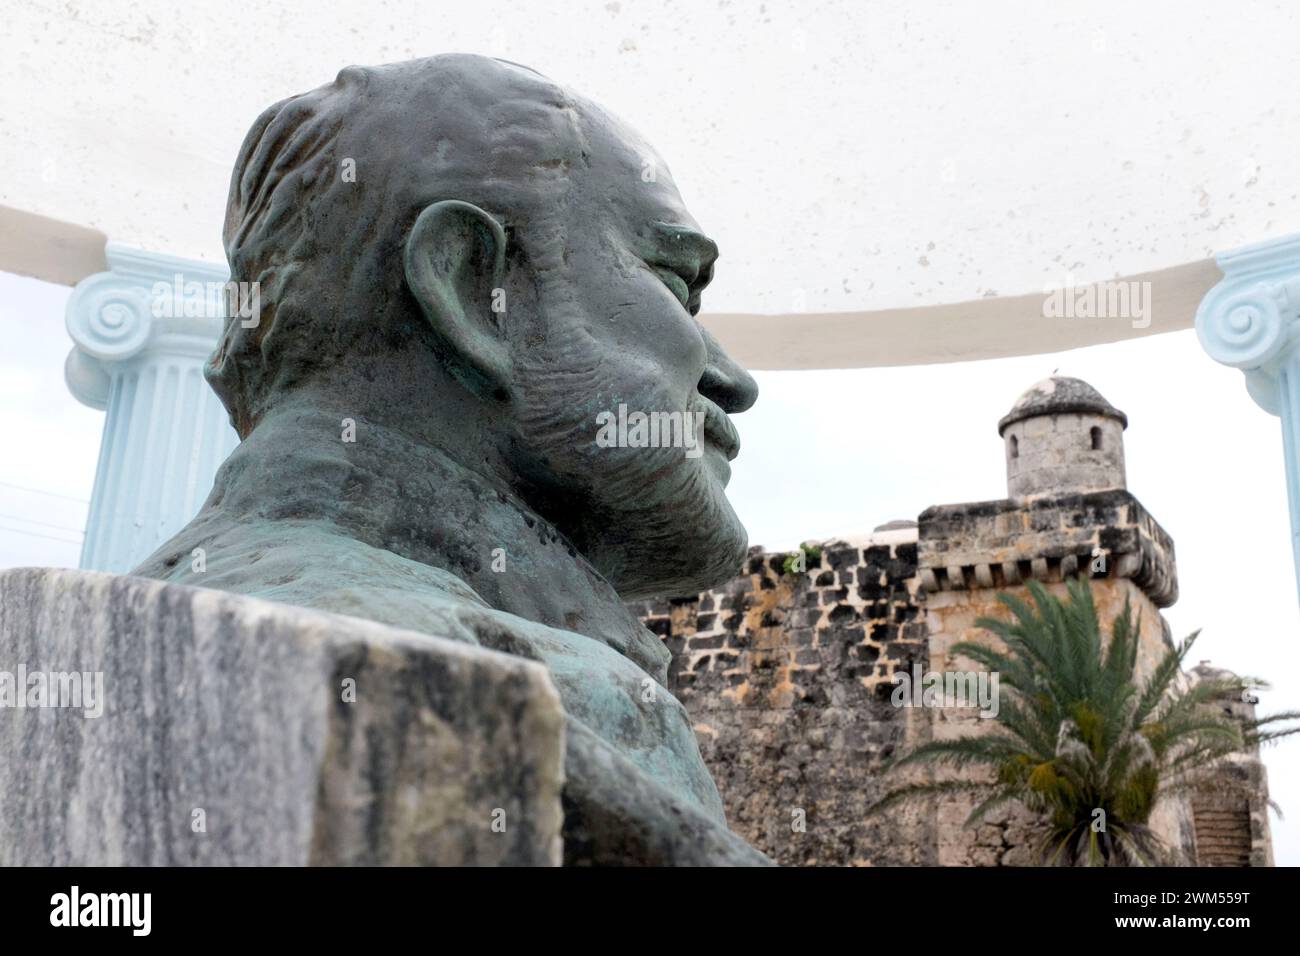 Monumento a Ernest Hemingway en el pueblo pesquero de Cojimar. Aquí es donde tiene lugar su novela “El viejo y el mar”. Foto de stock